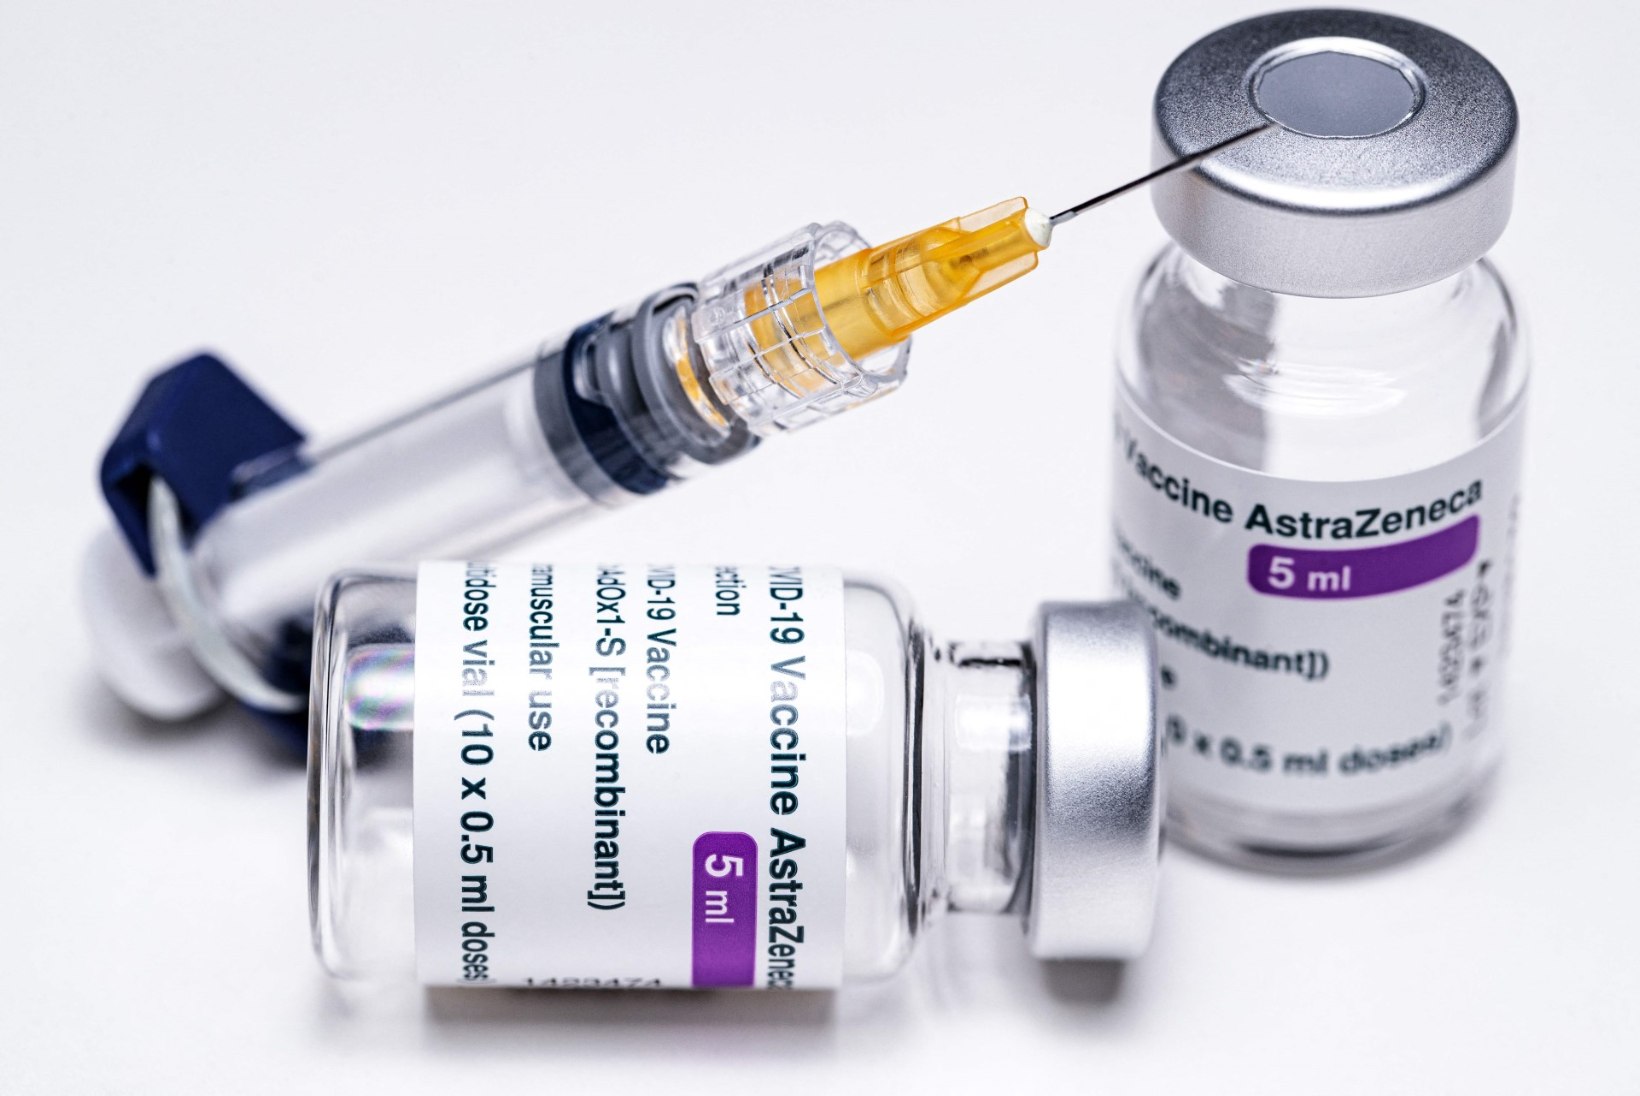 Norras toimetati kolm meditsiinitöötajat pärast AstraZeneca vaktsiini saamist haiglasse